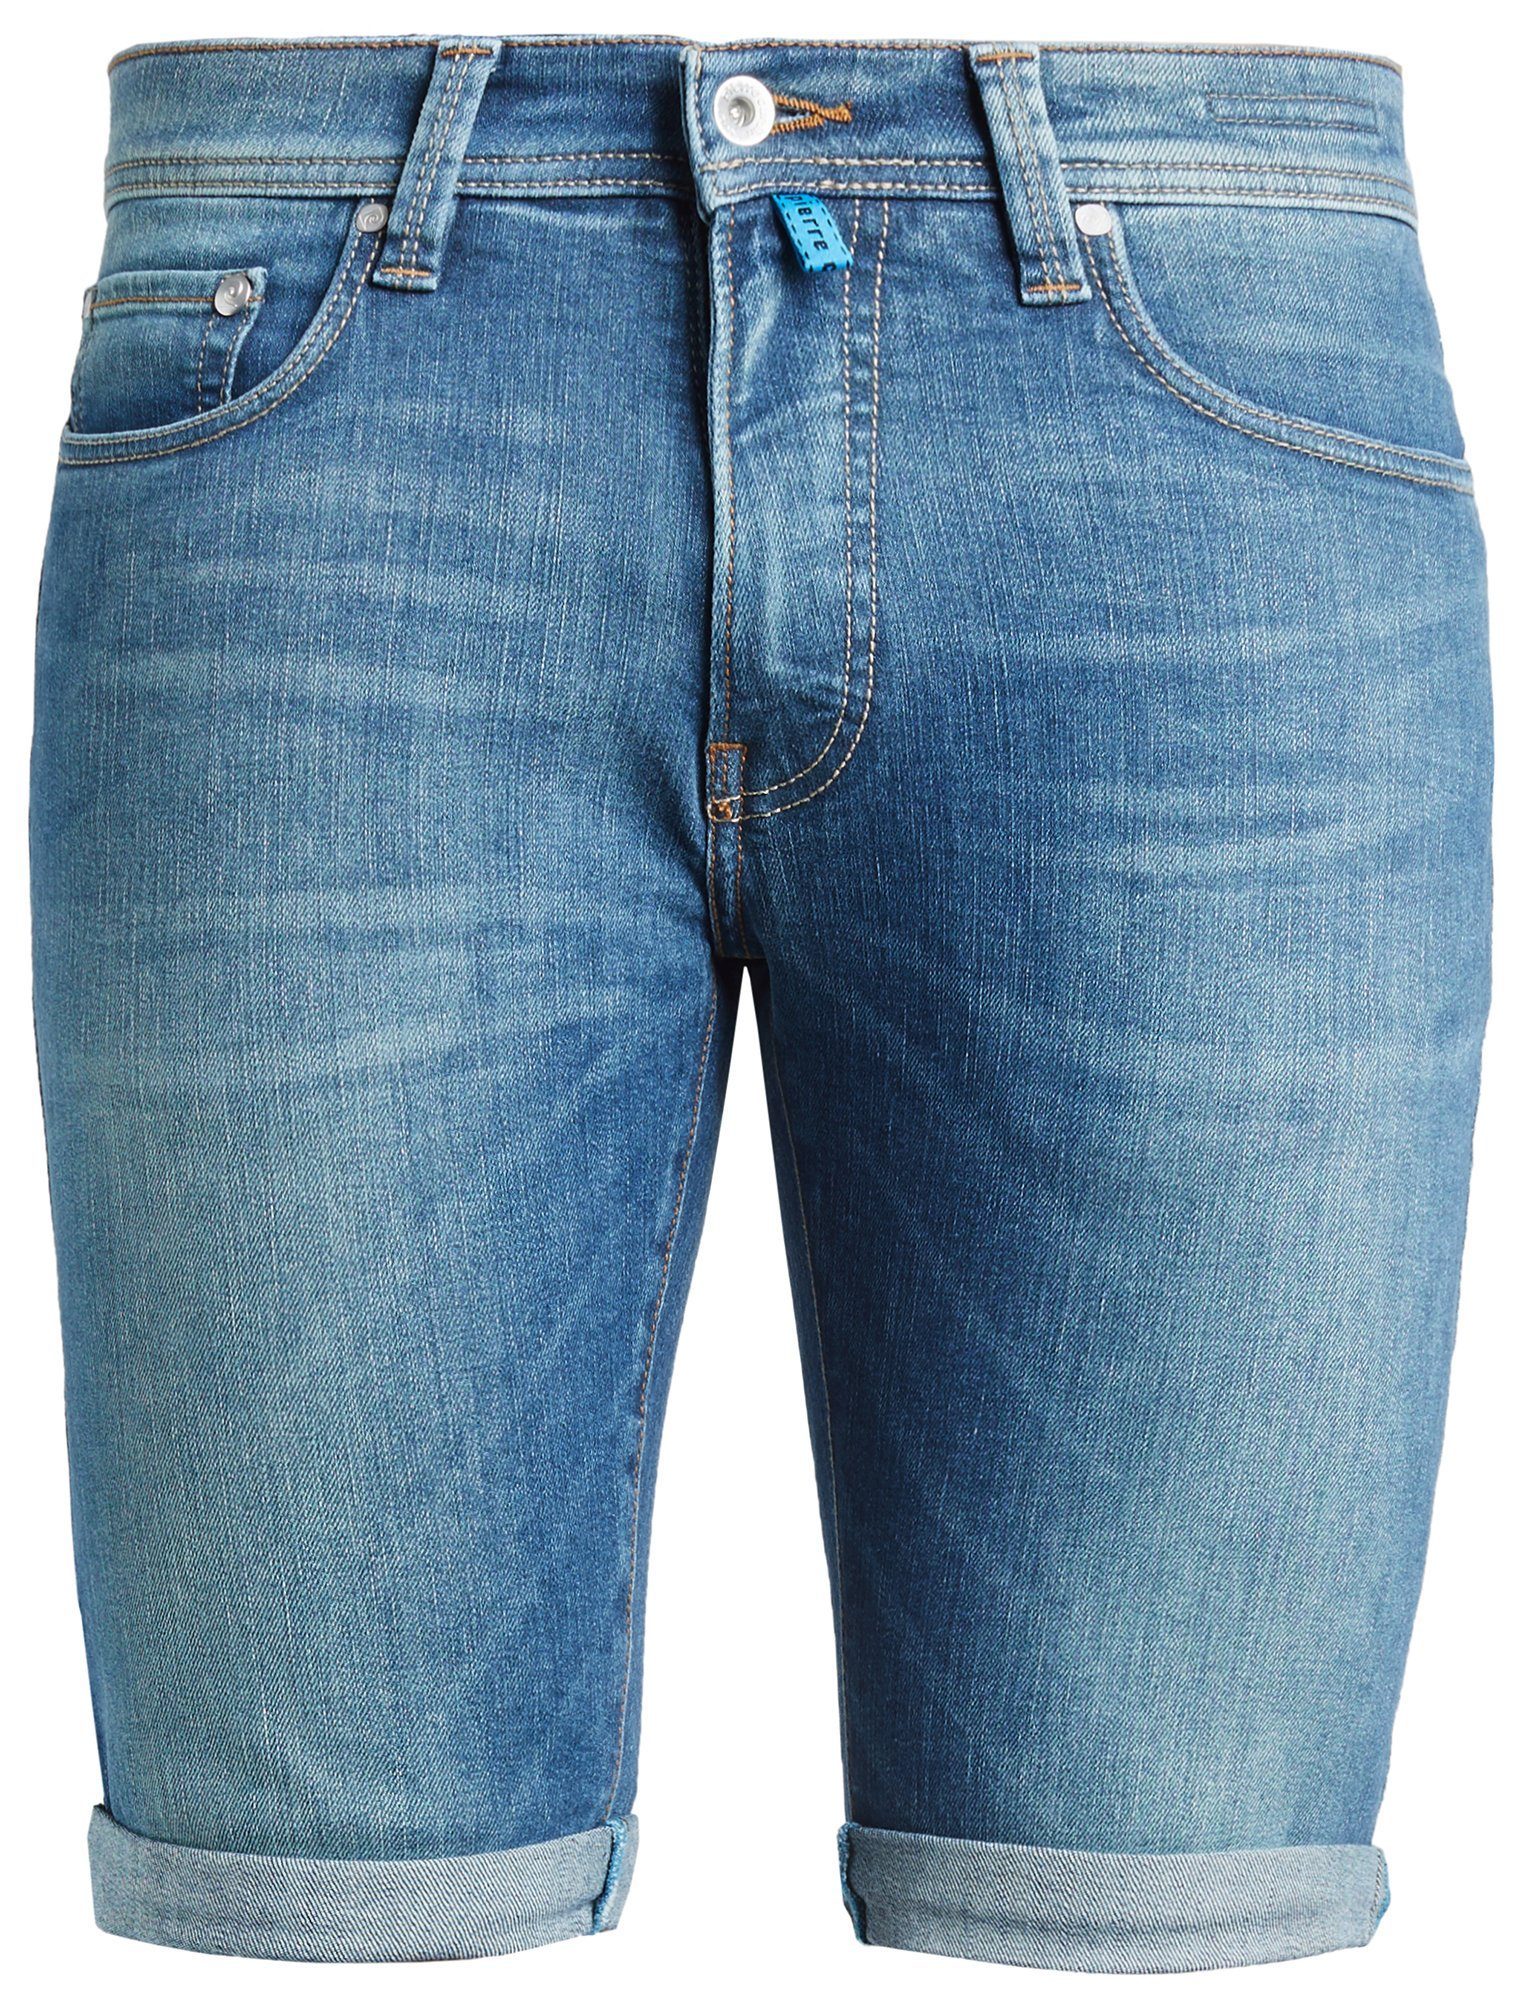 Pierre Cardin 5-Pocket-Jeans PIERRE CARDIN FUTUREFLEX SHORTS blue green used washed 3452 8880.31